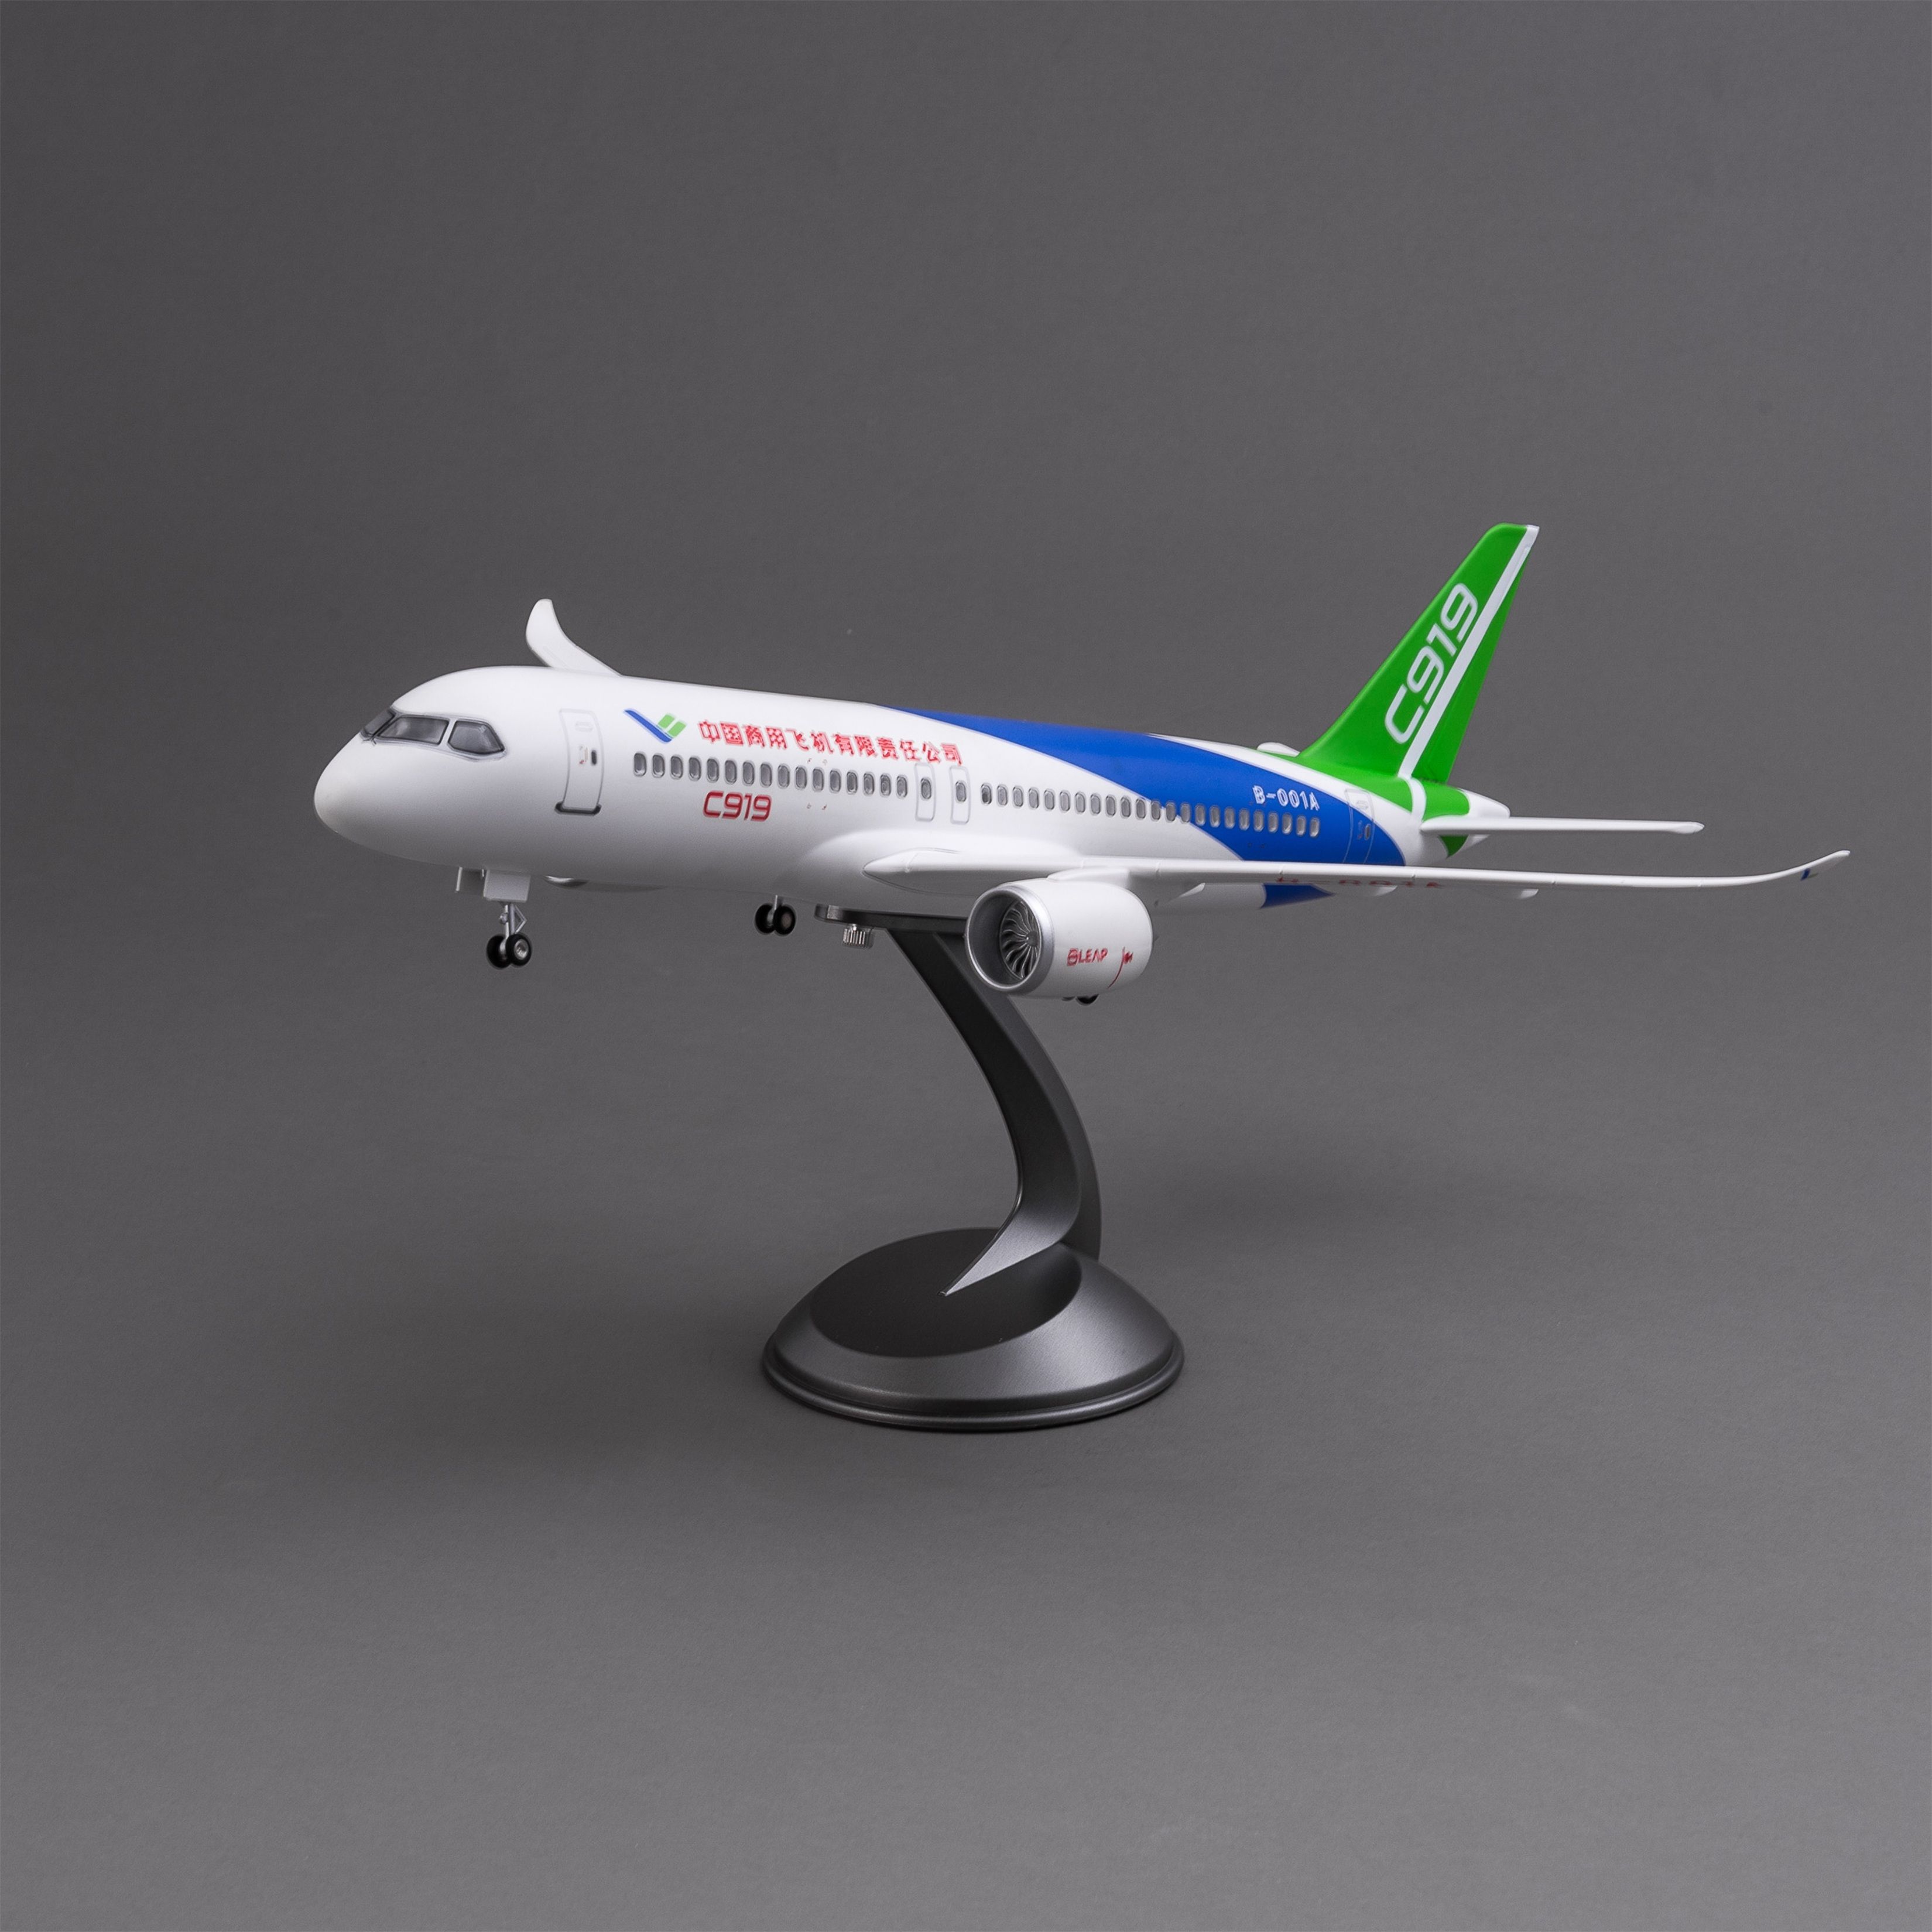 飞机模型/无人机/发光玩具/C919/飞机产品图